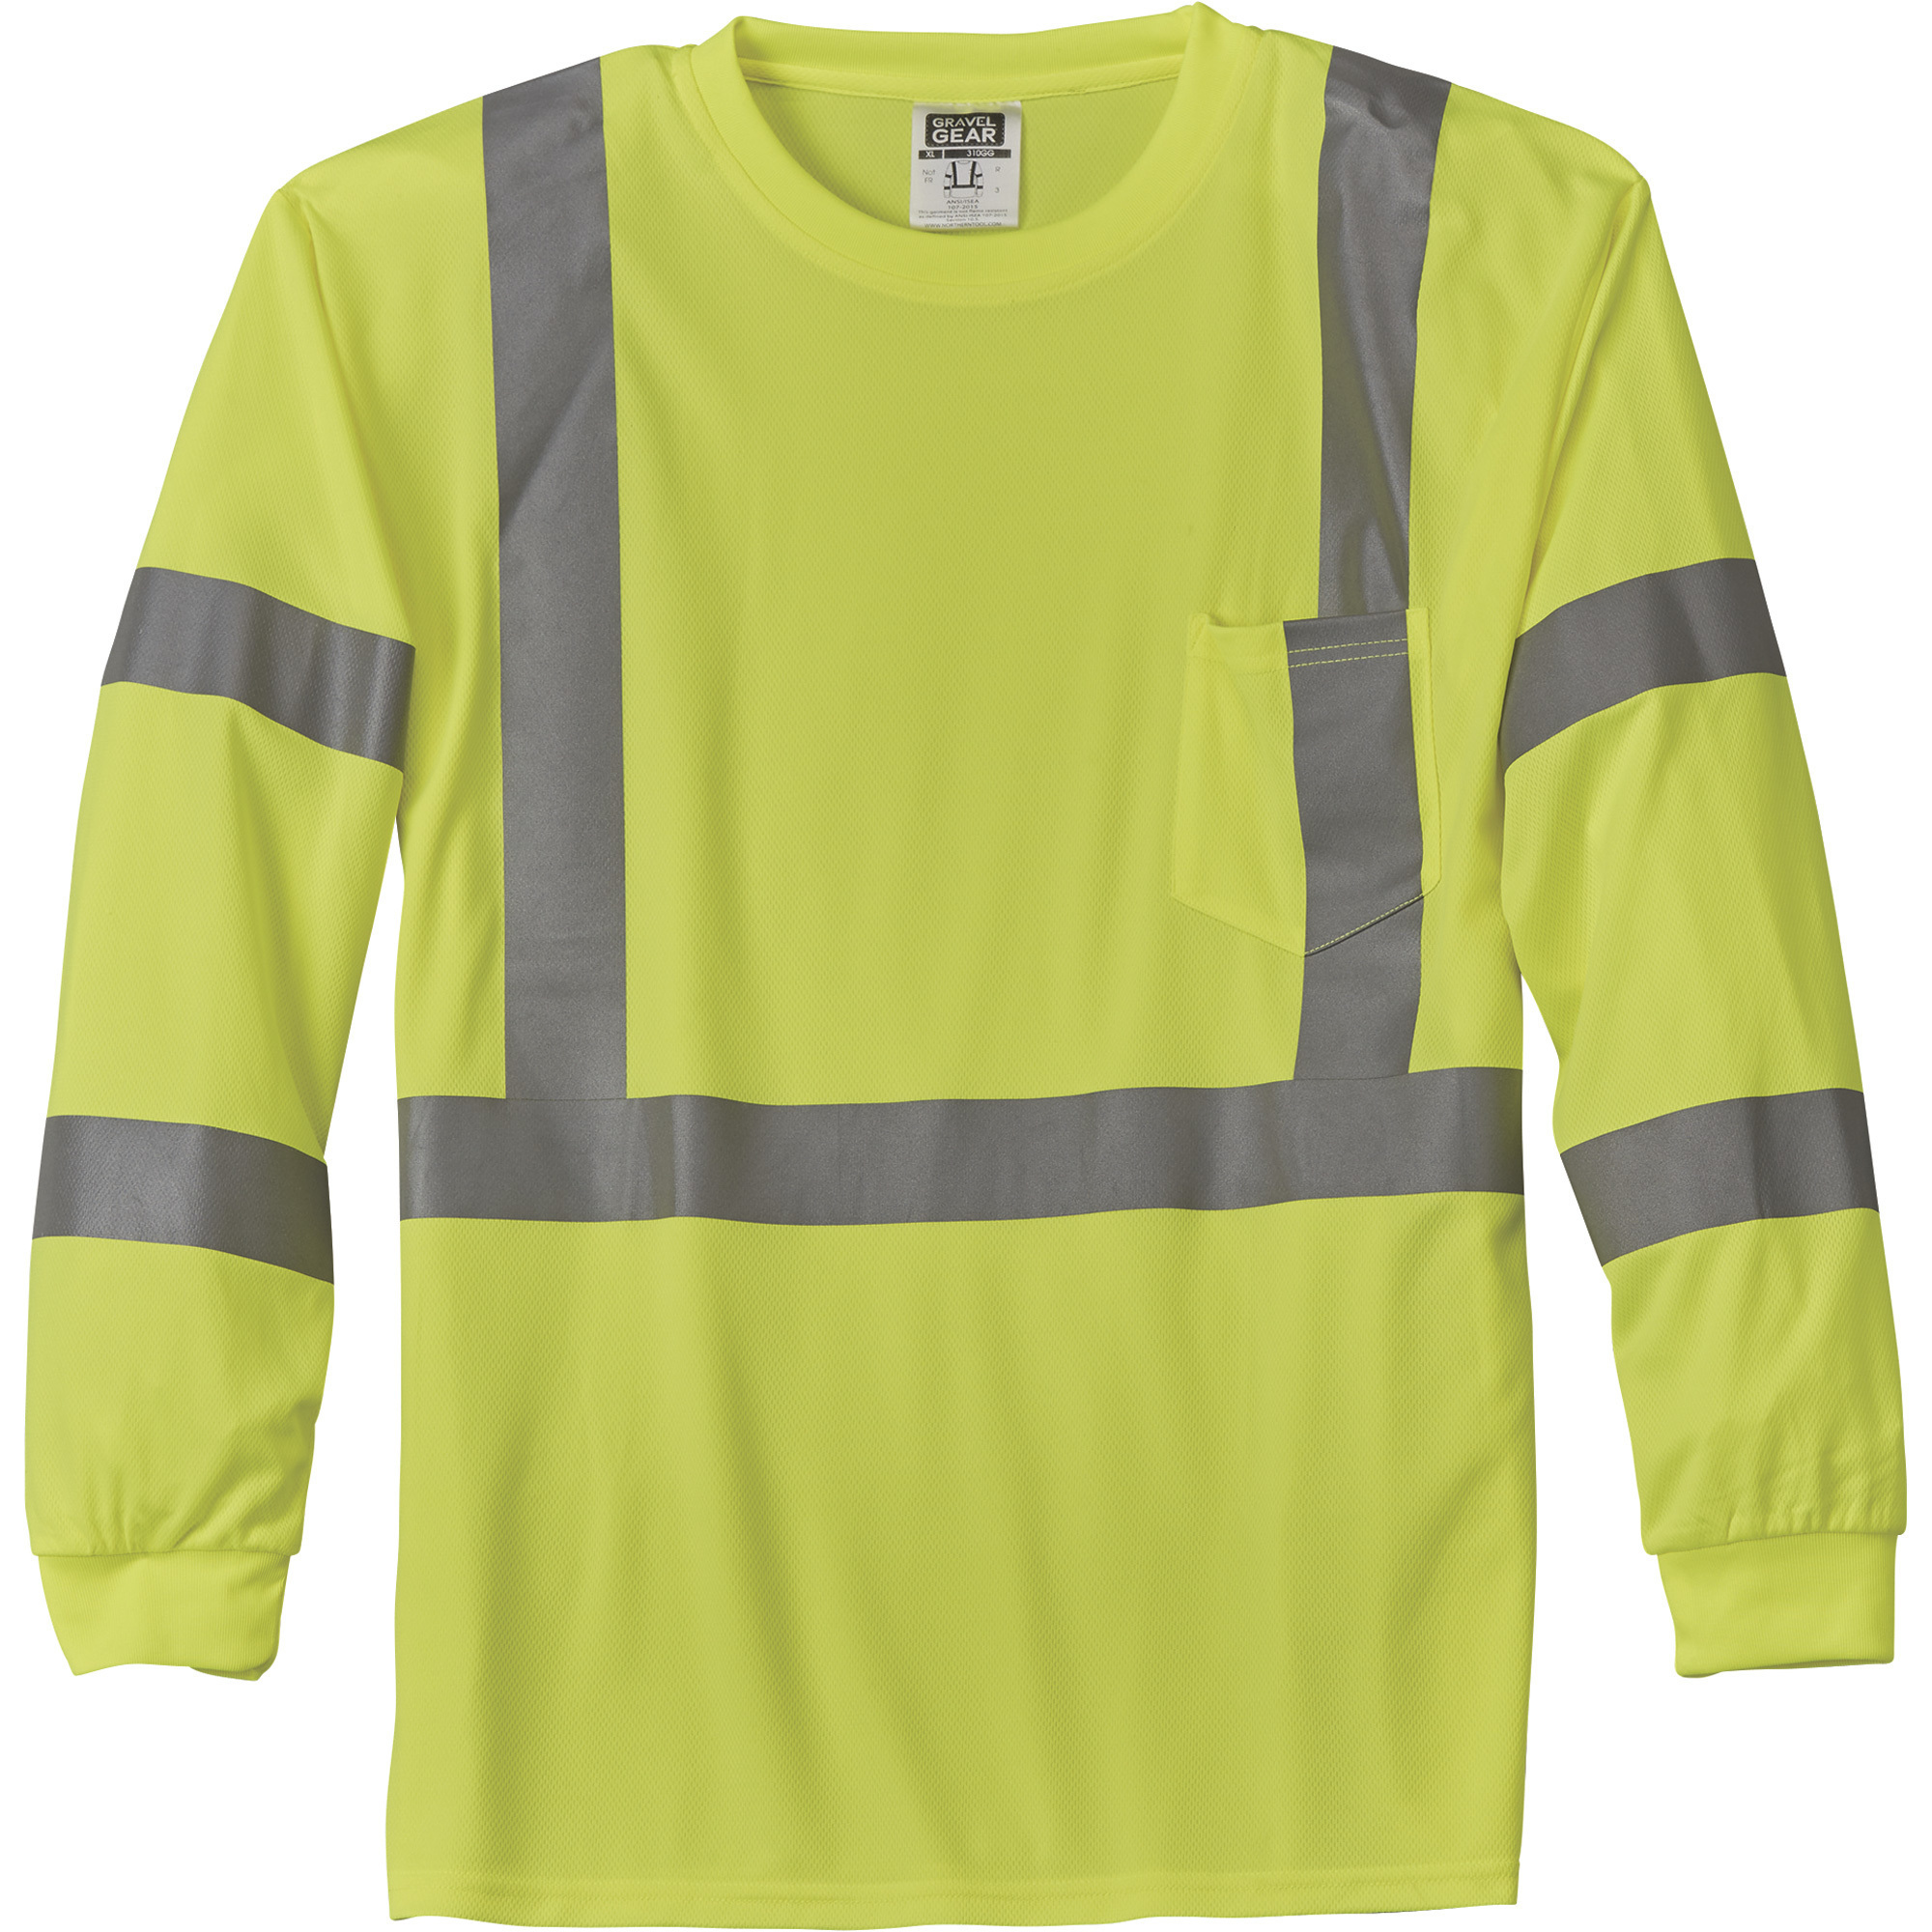 Gravel Gear HV Menâs Class 3 High Visibility High-Performance Long Sleeve T-Shirt â Lime, Large